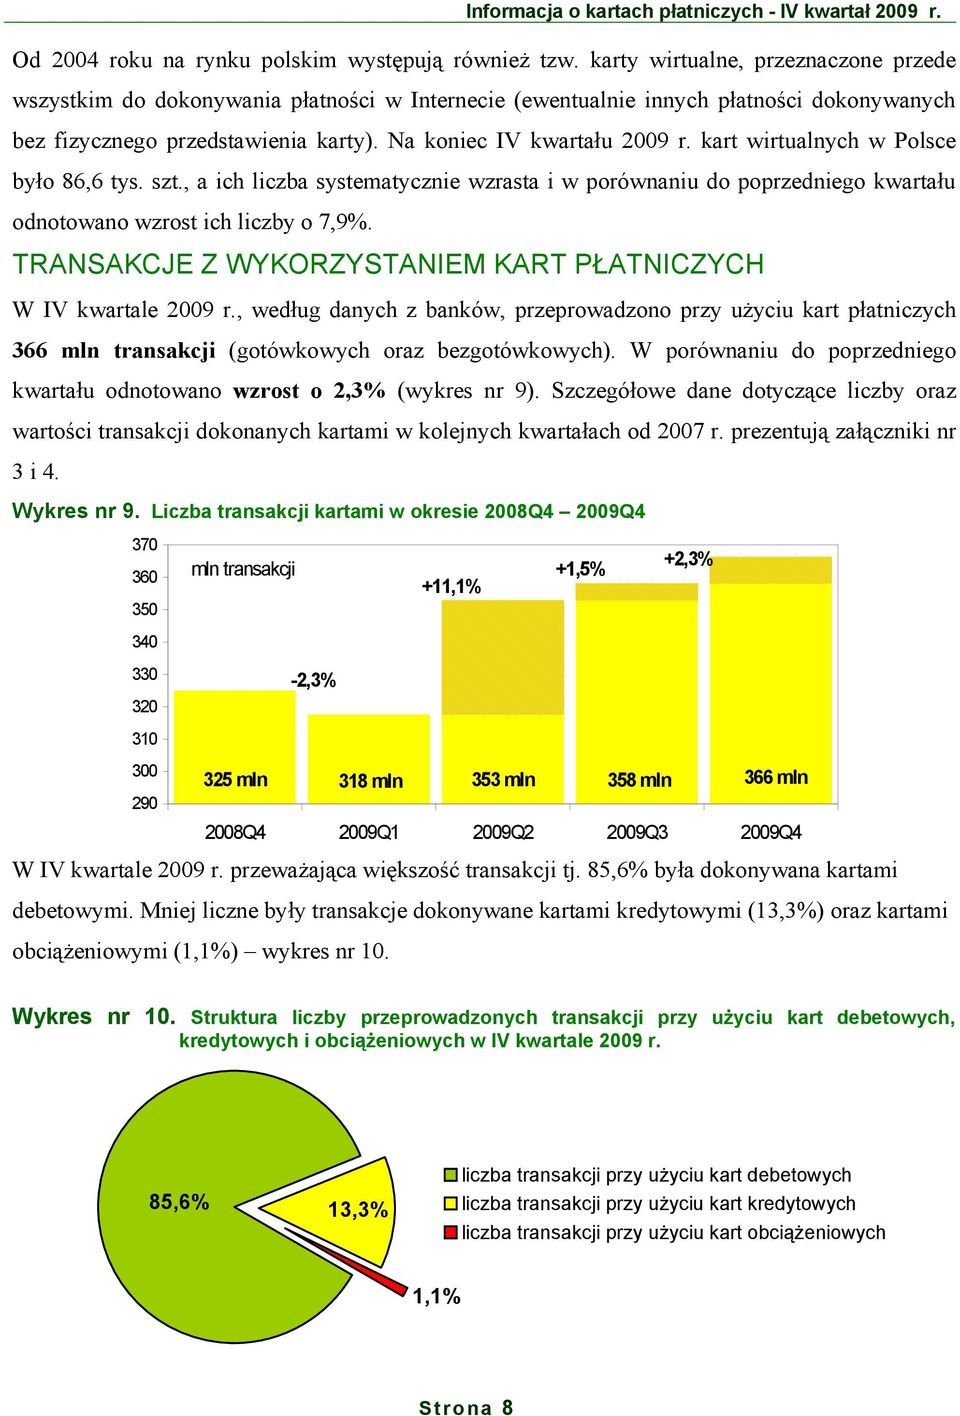 kart wirtualnych w Polsce było 86,6 tys. szt., a ich liczba systematycznie wzrasta i w porównaniu do poprzedniego kwartału odnotowano wzrost ich liczby o 7,9%.